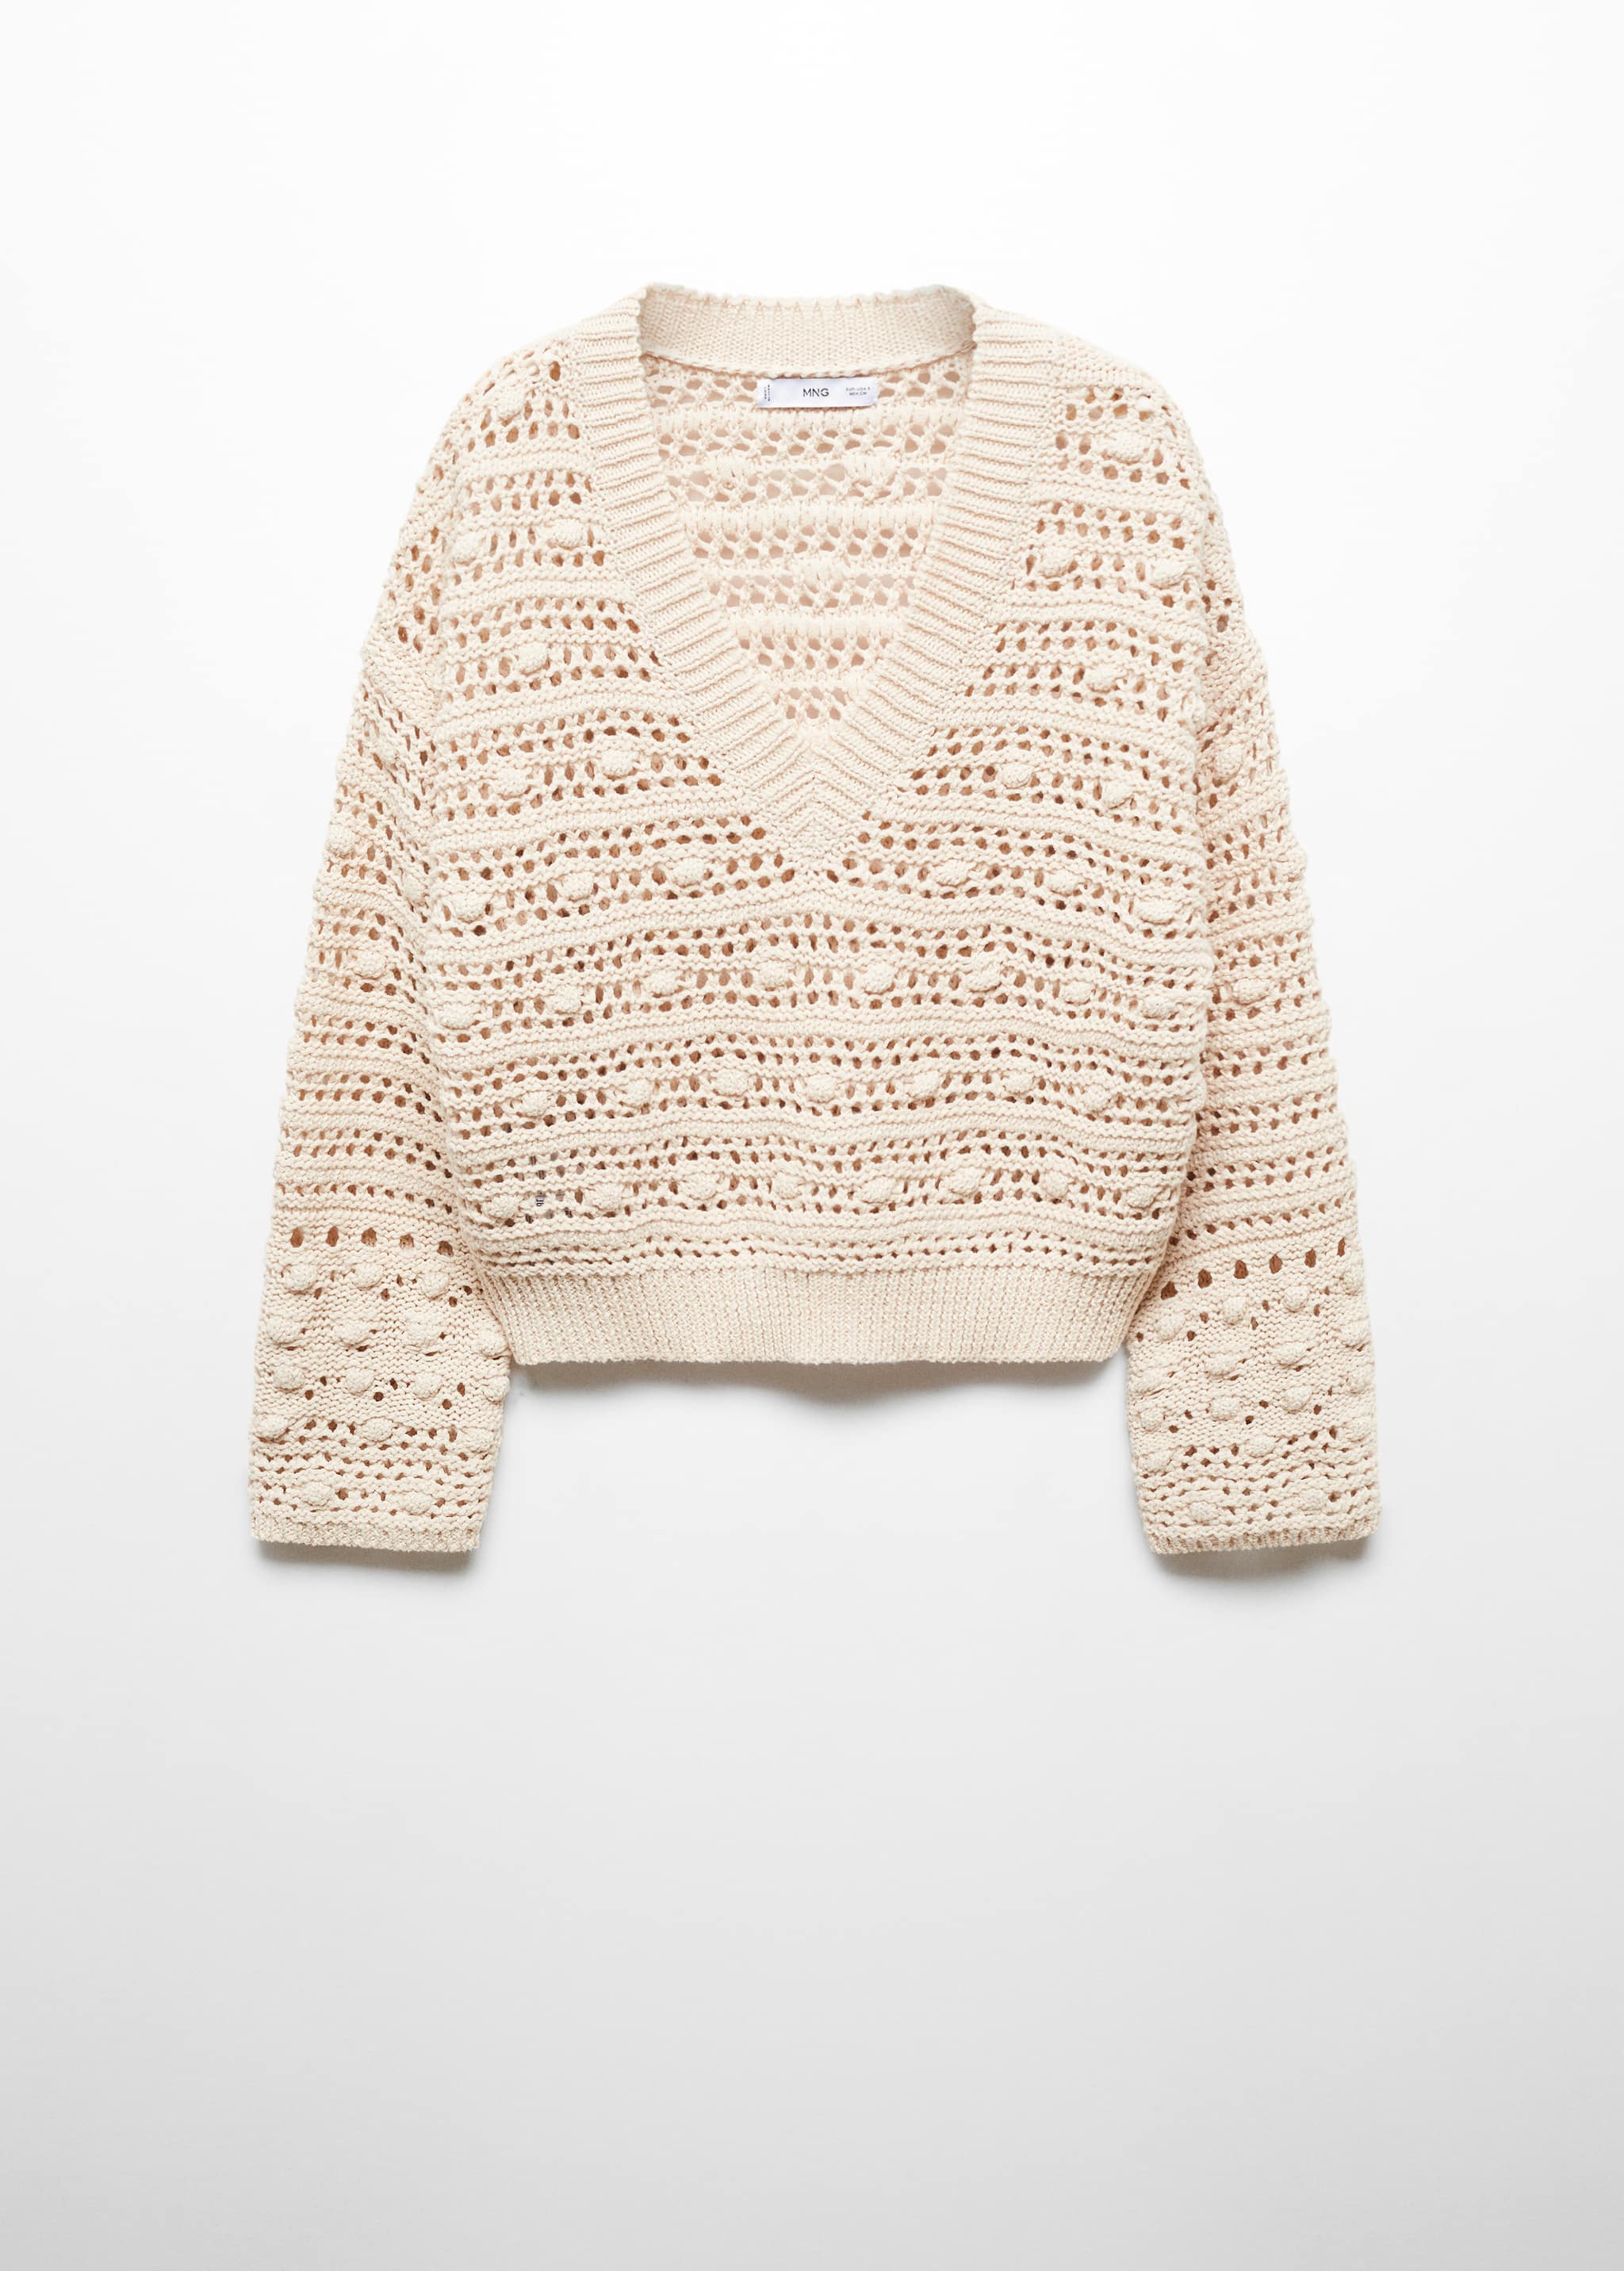 Ажурный пуловер - Изделие без модели